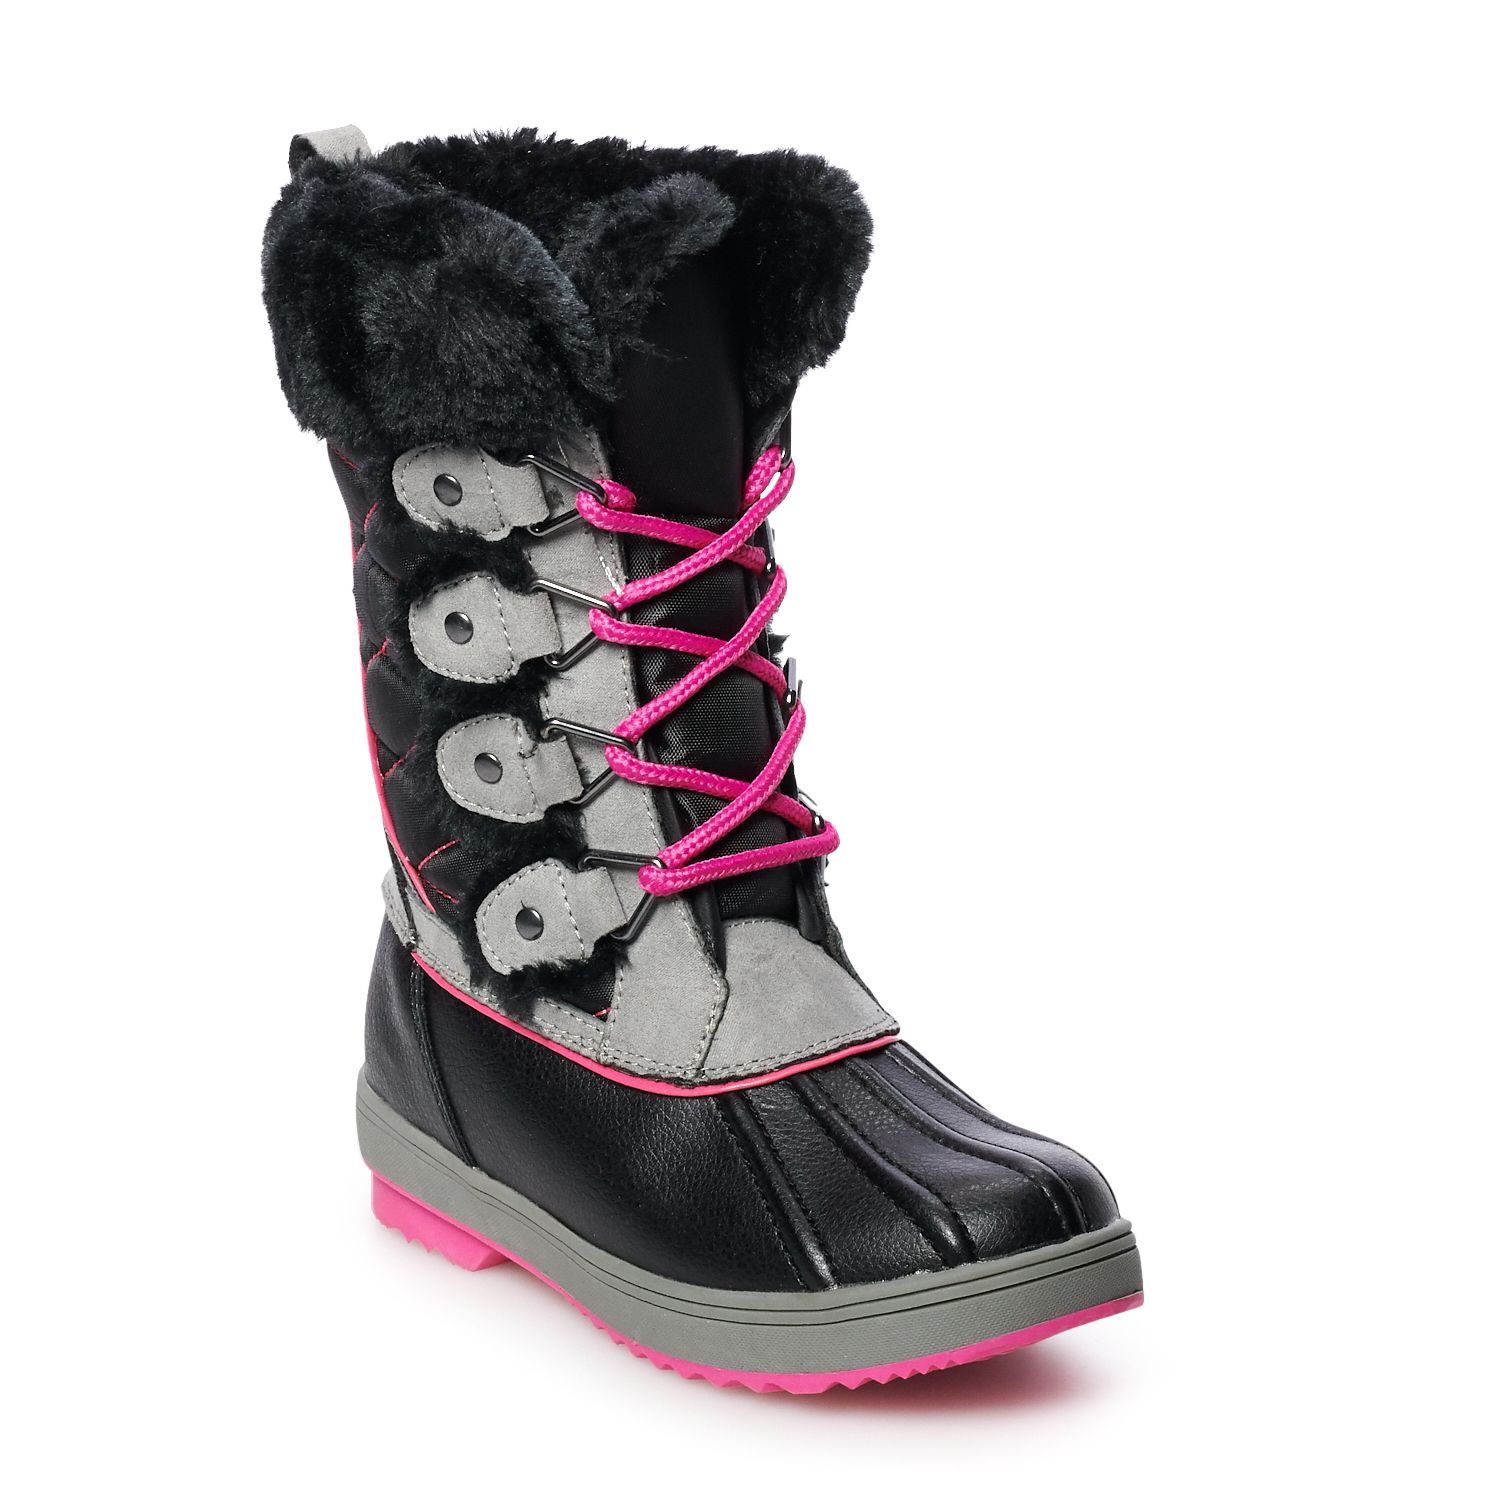 khols snow boots